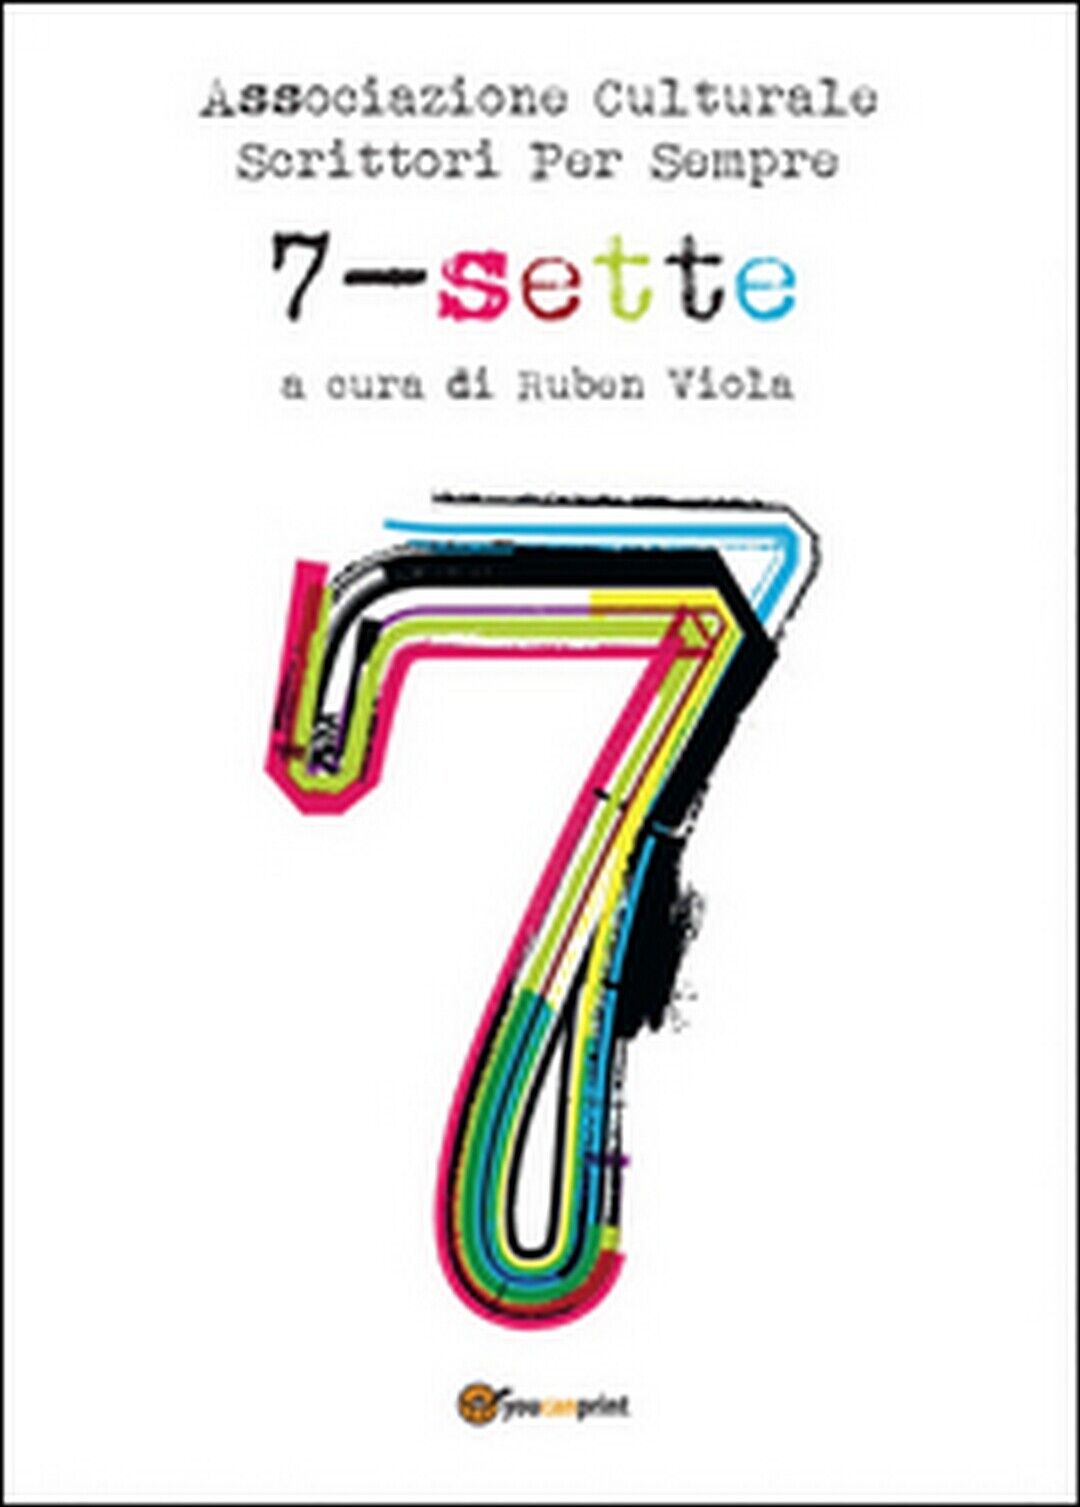 Sette. L'antologia  di Associazione Culturale Scrittori Per Sempre,  2014